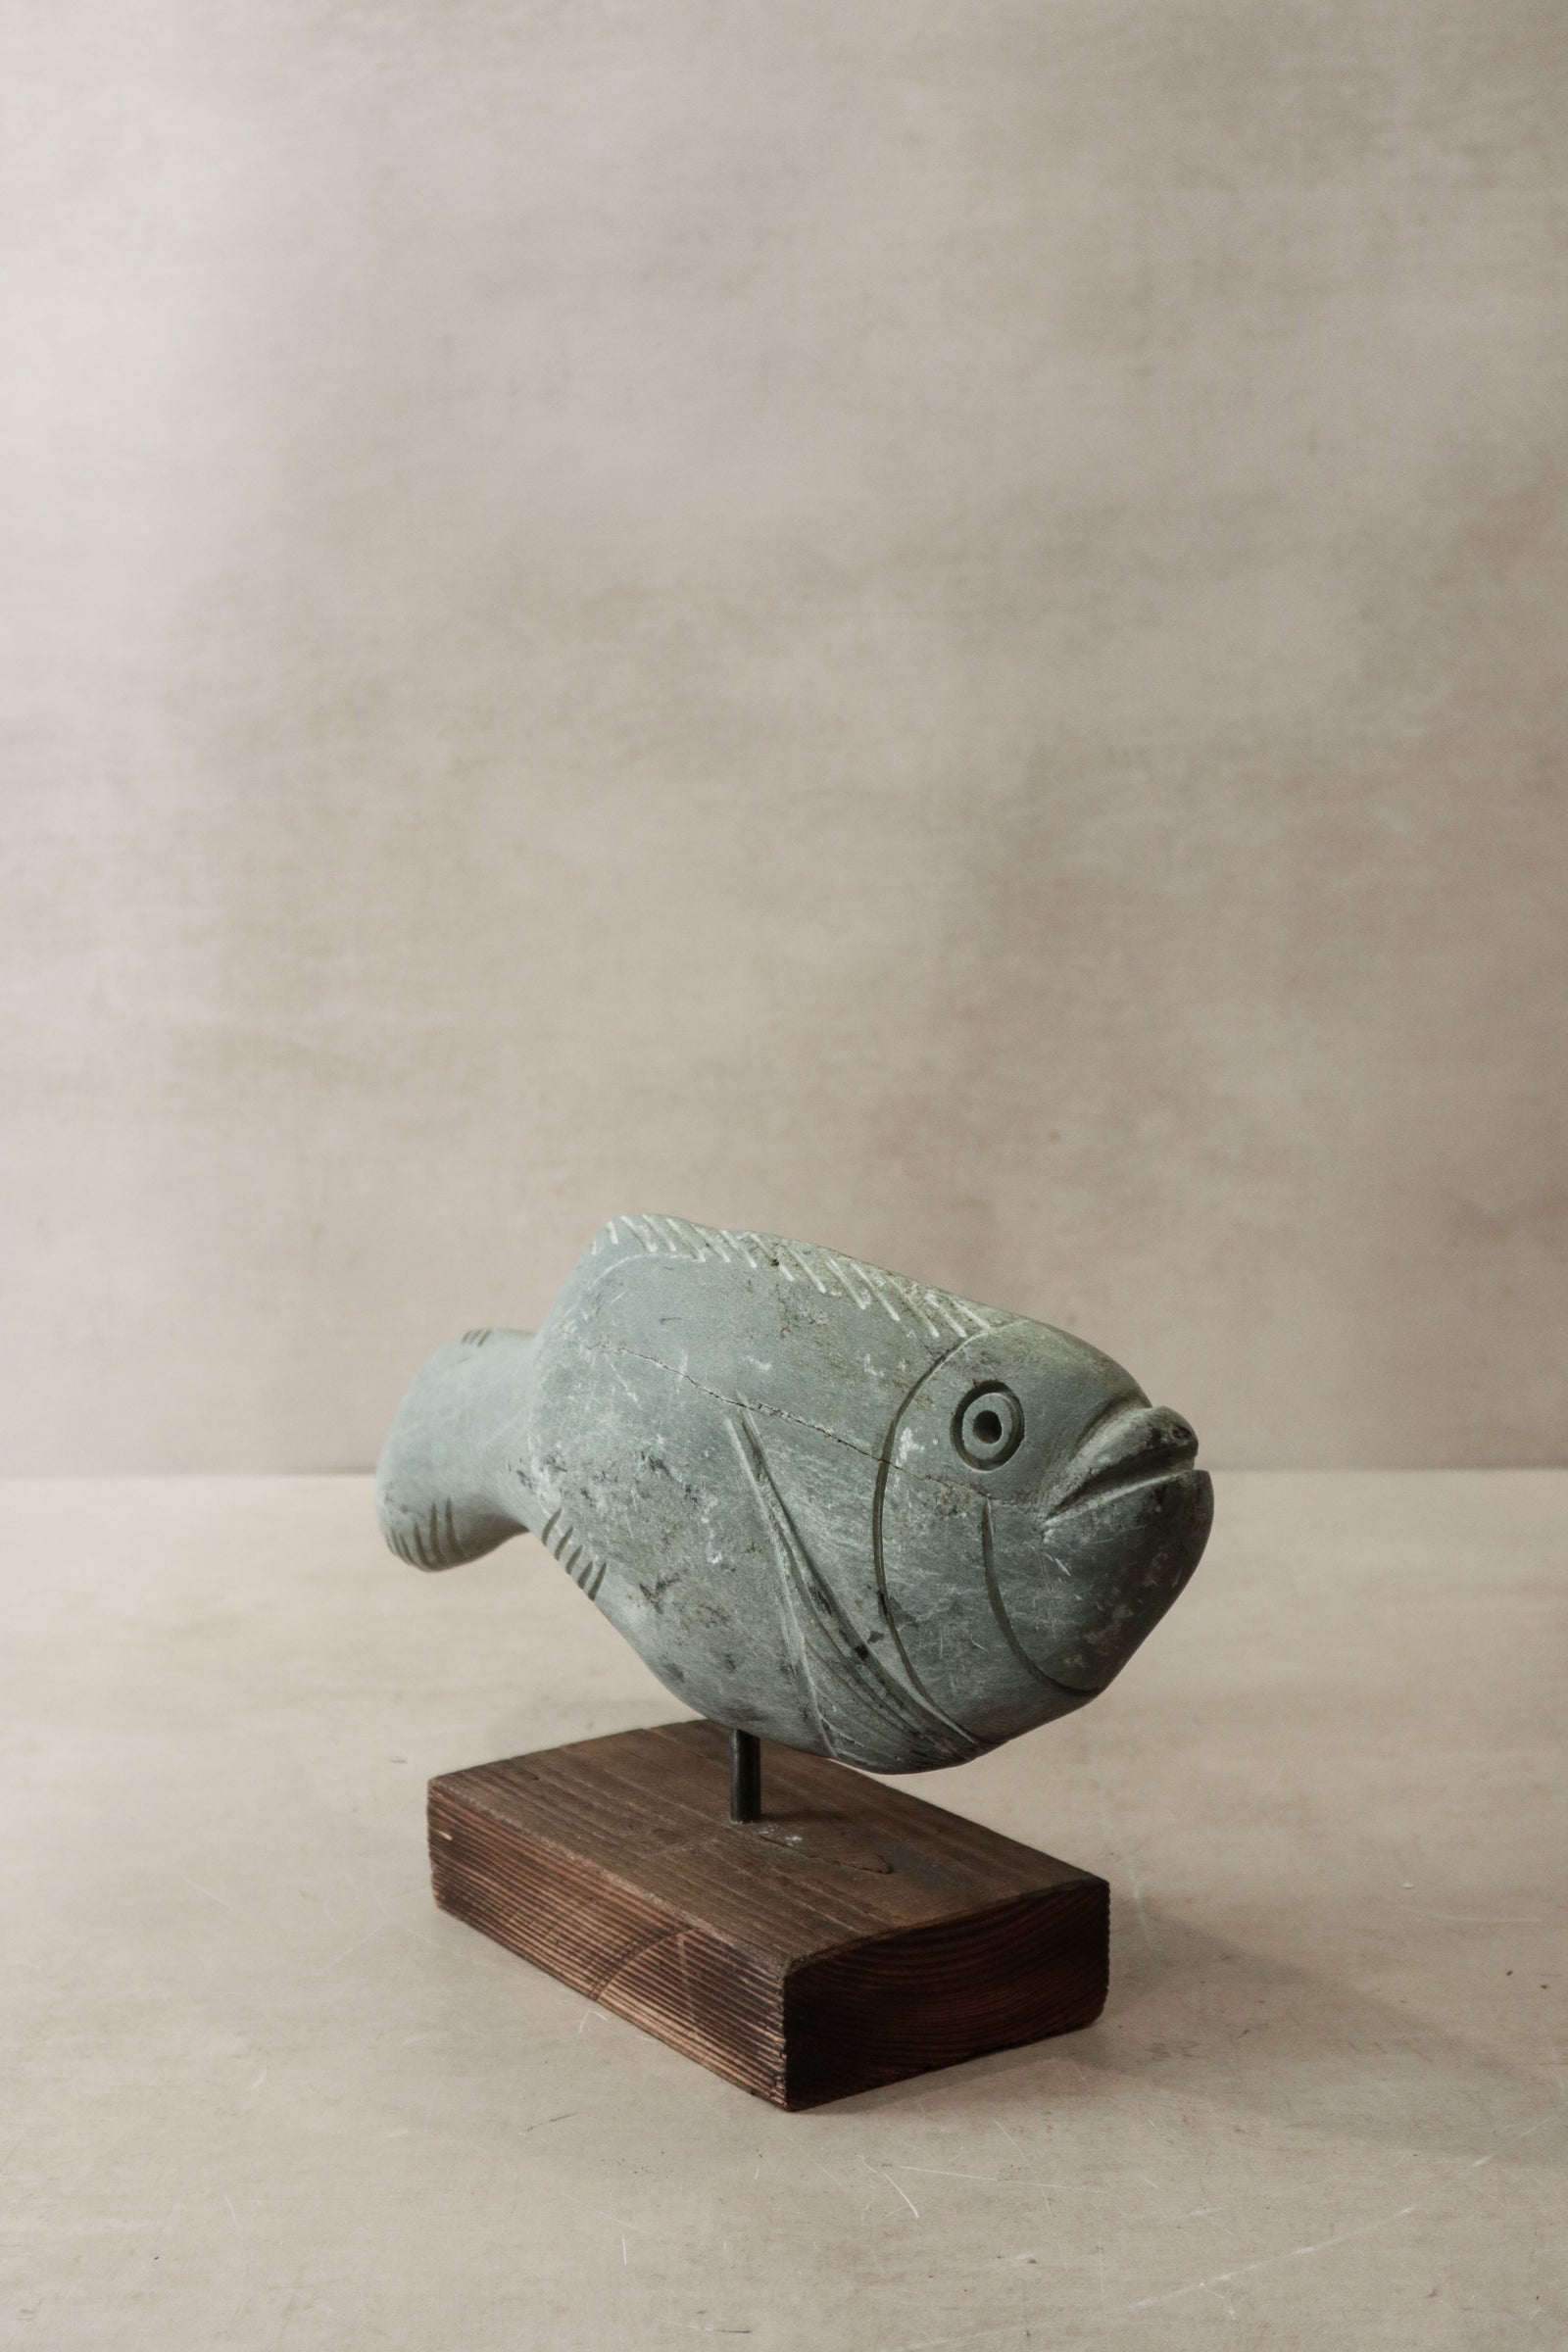 Stone Fish Sculpture - Zimbabwe - 29.2